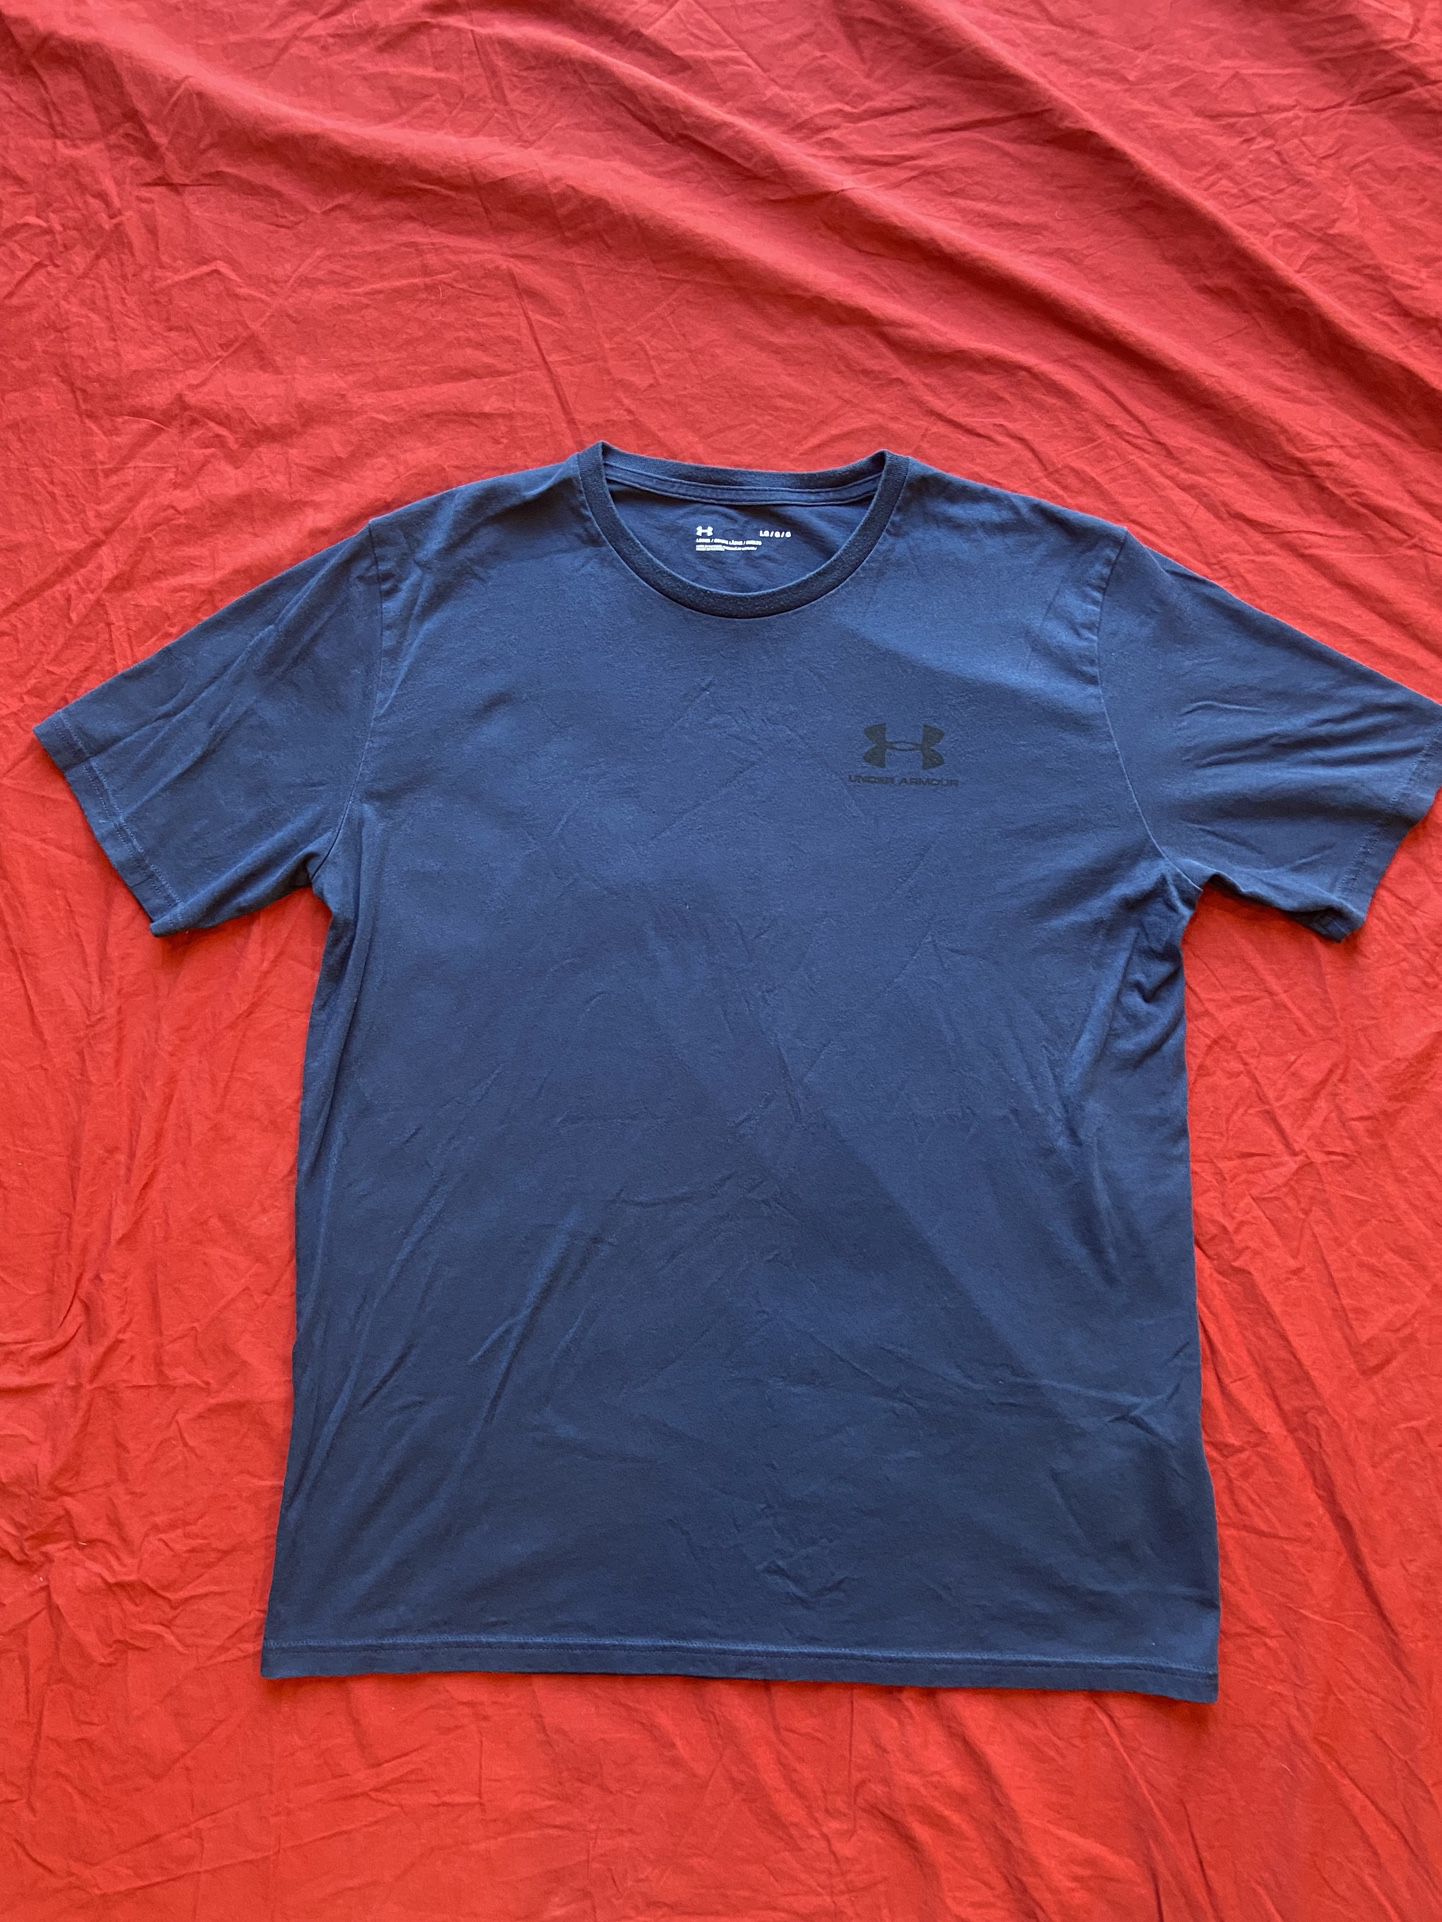 Men's Under Armour T-Shirt Size Large Blue